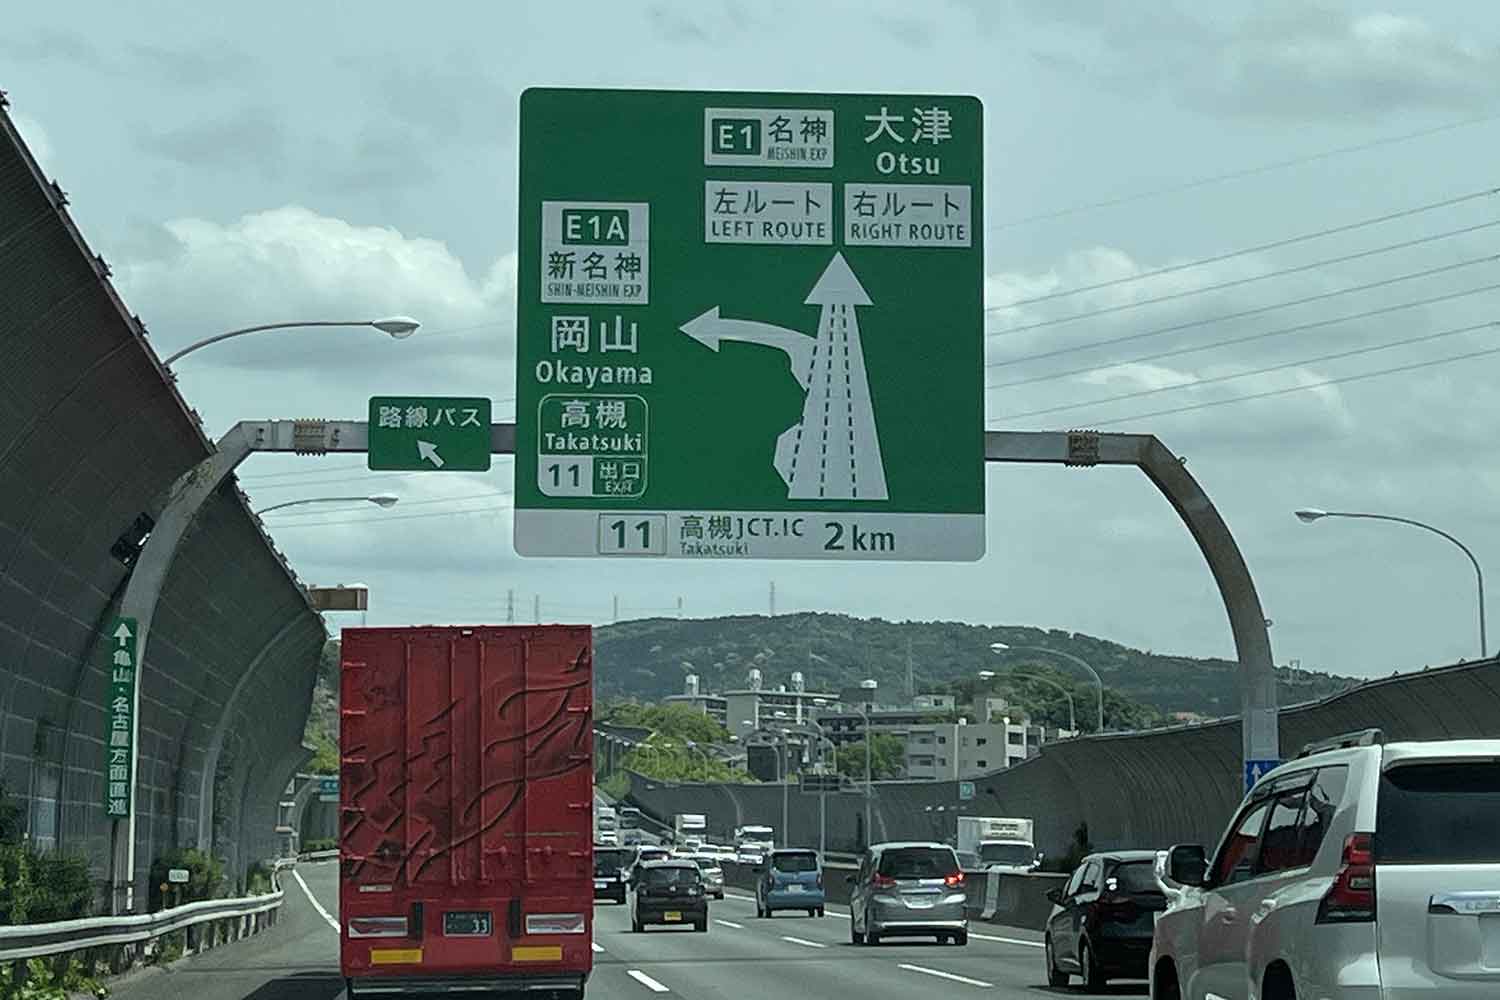 高速道路に右ルートと左ルートが存在しているワケ